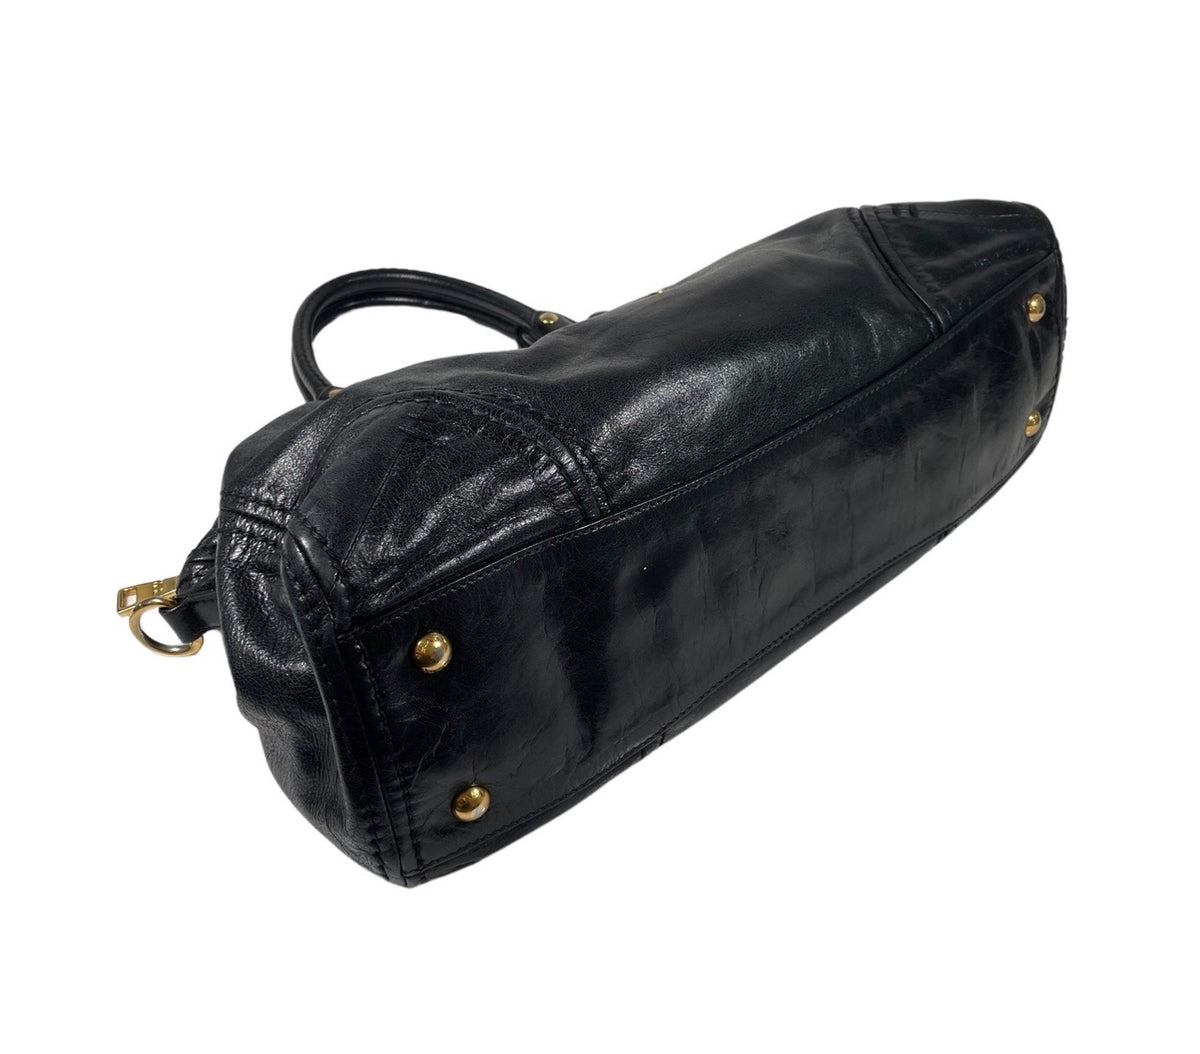 Prada Black Leather Bag with gold Hardware and Shoulder Strap